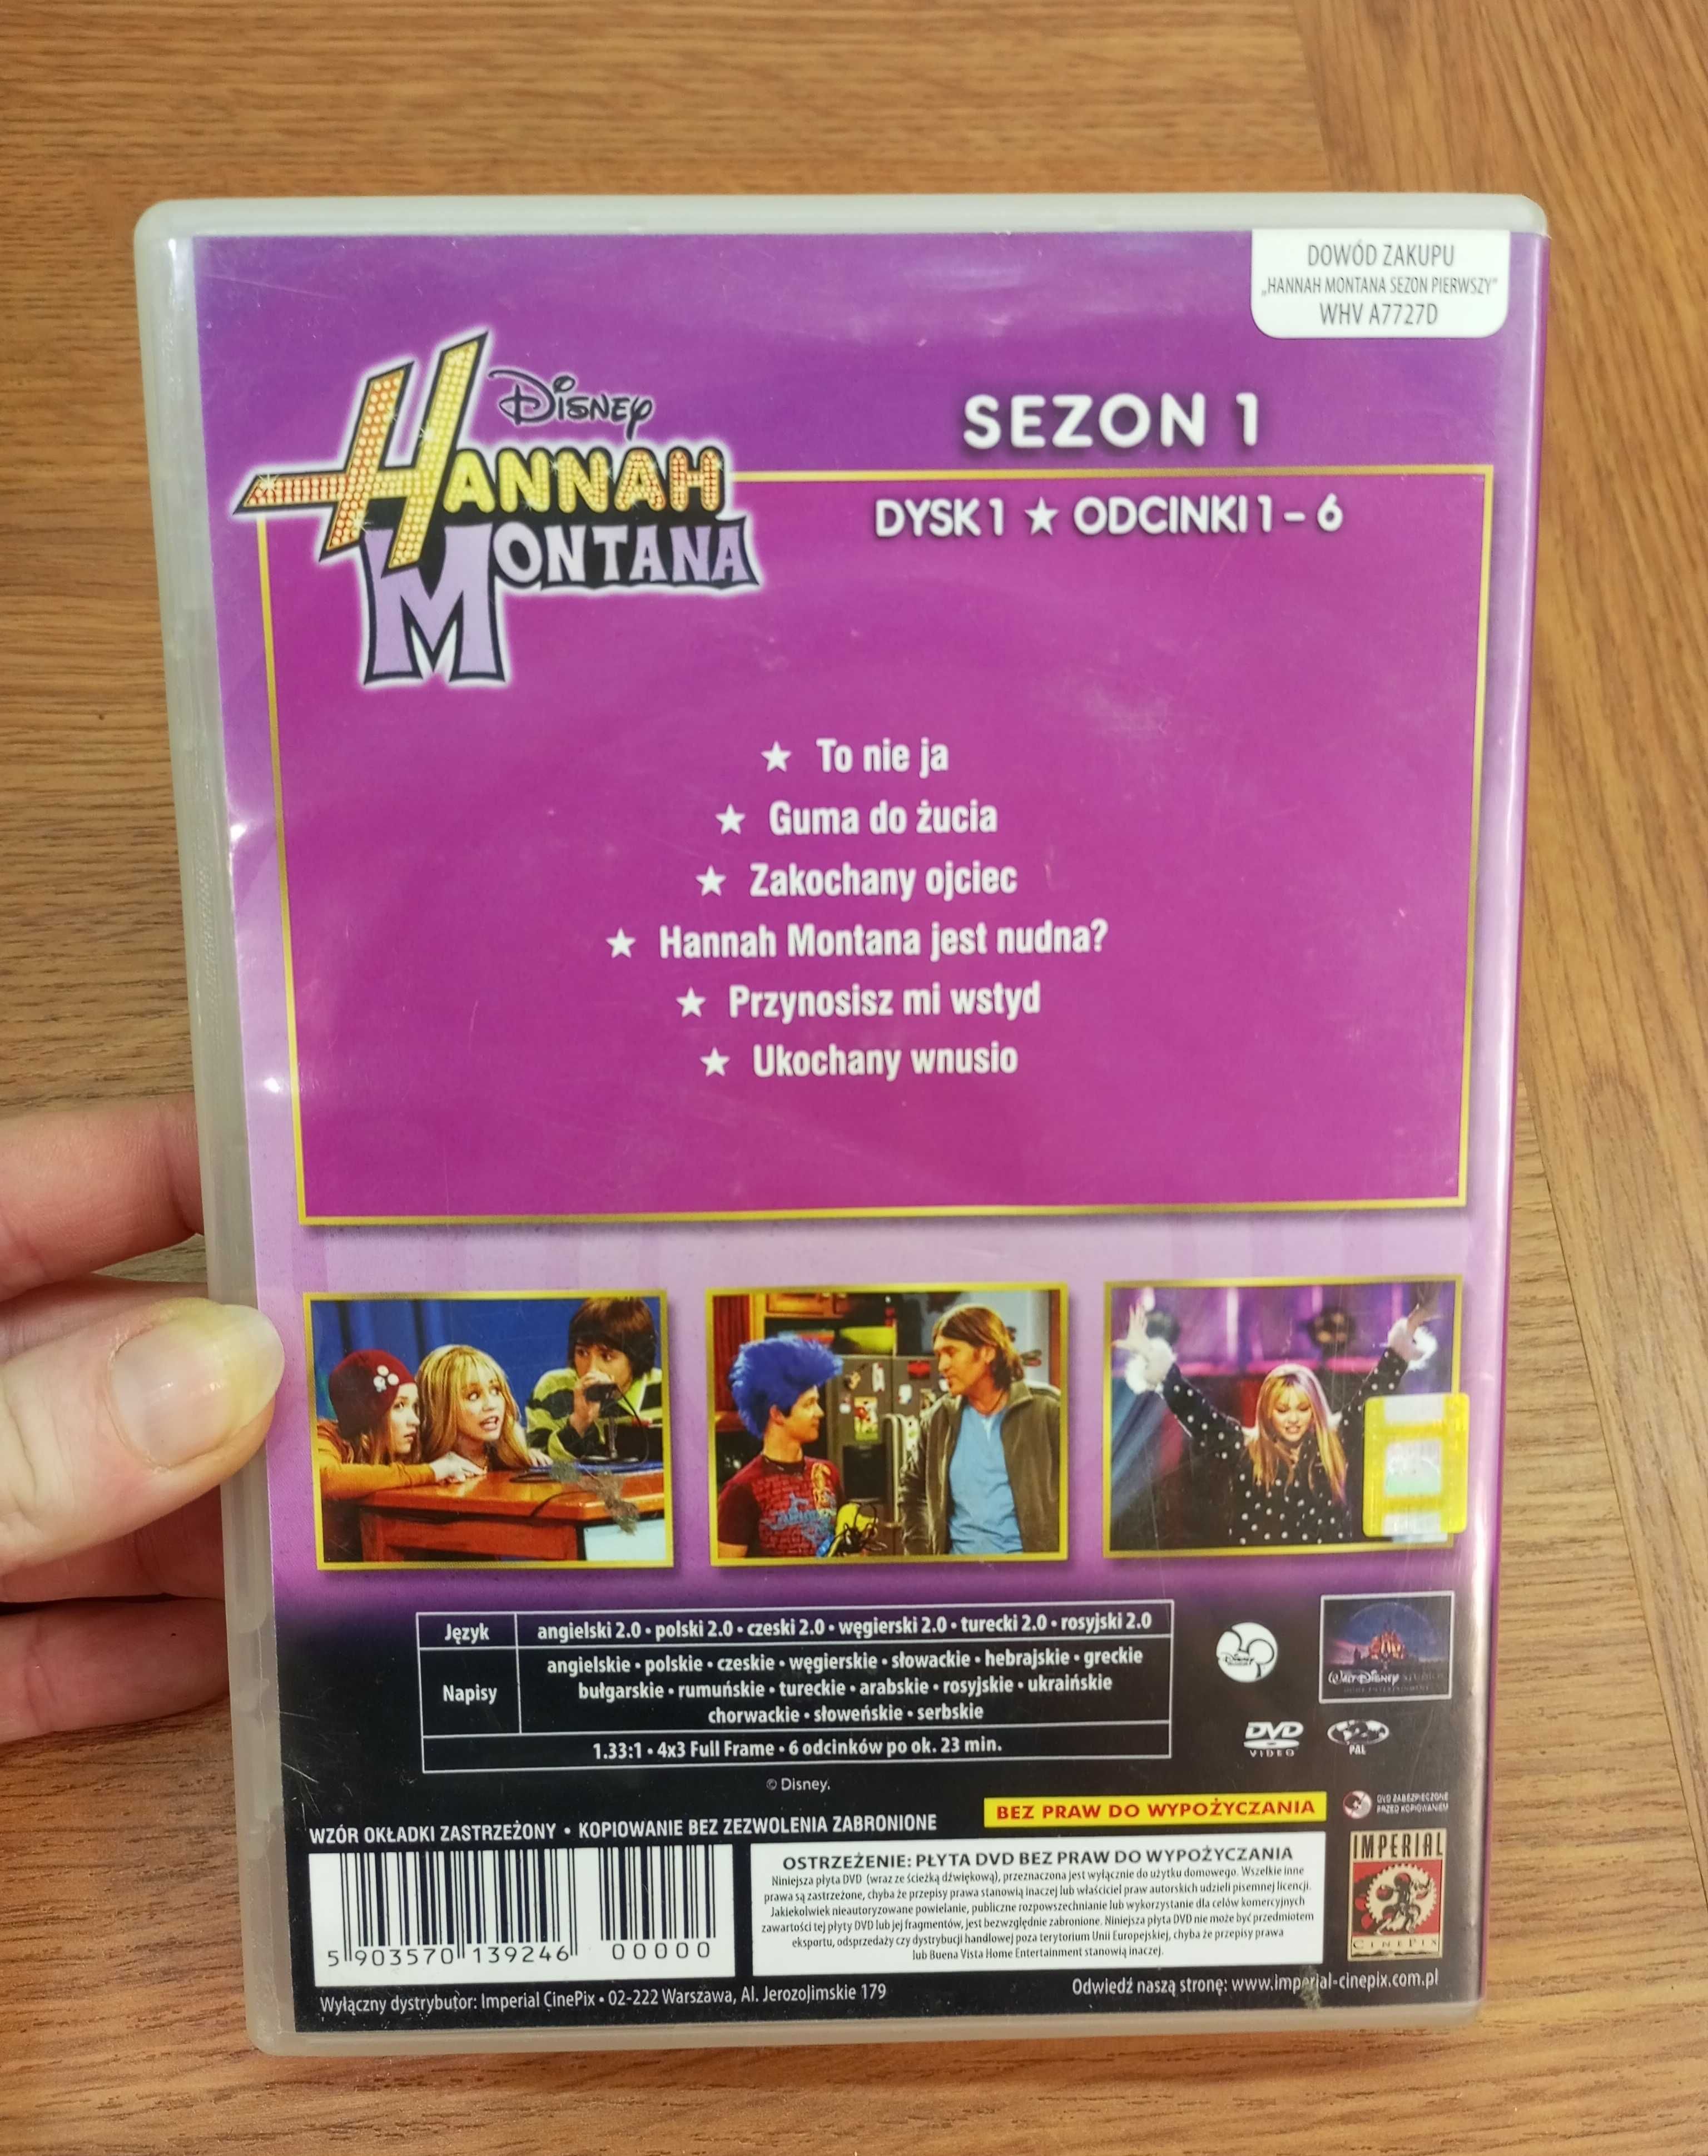 Płyta Disney Hannah Montana sezon 1 odc. 1-6